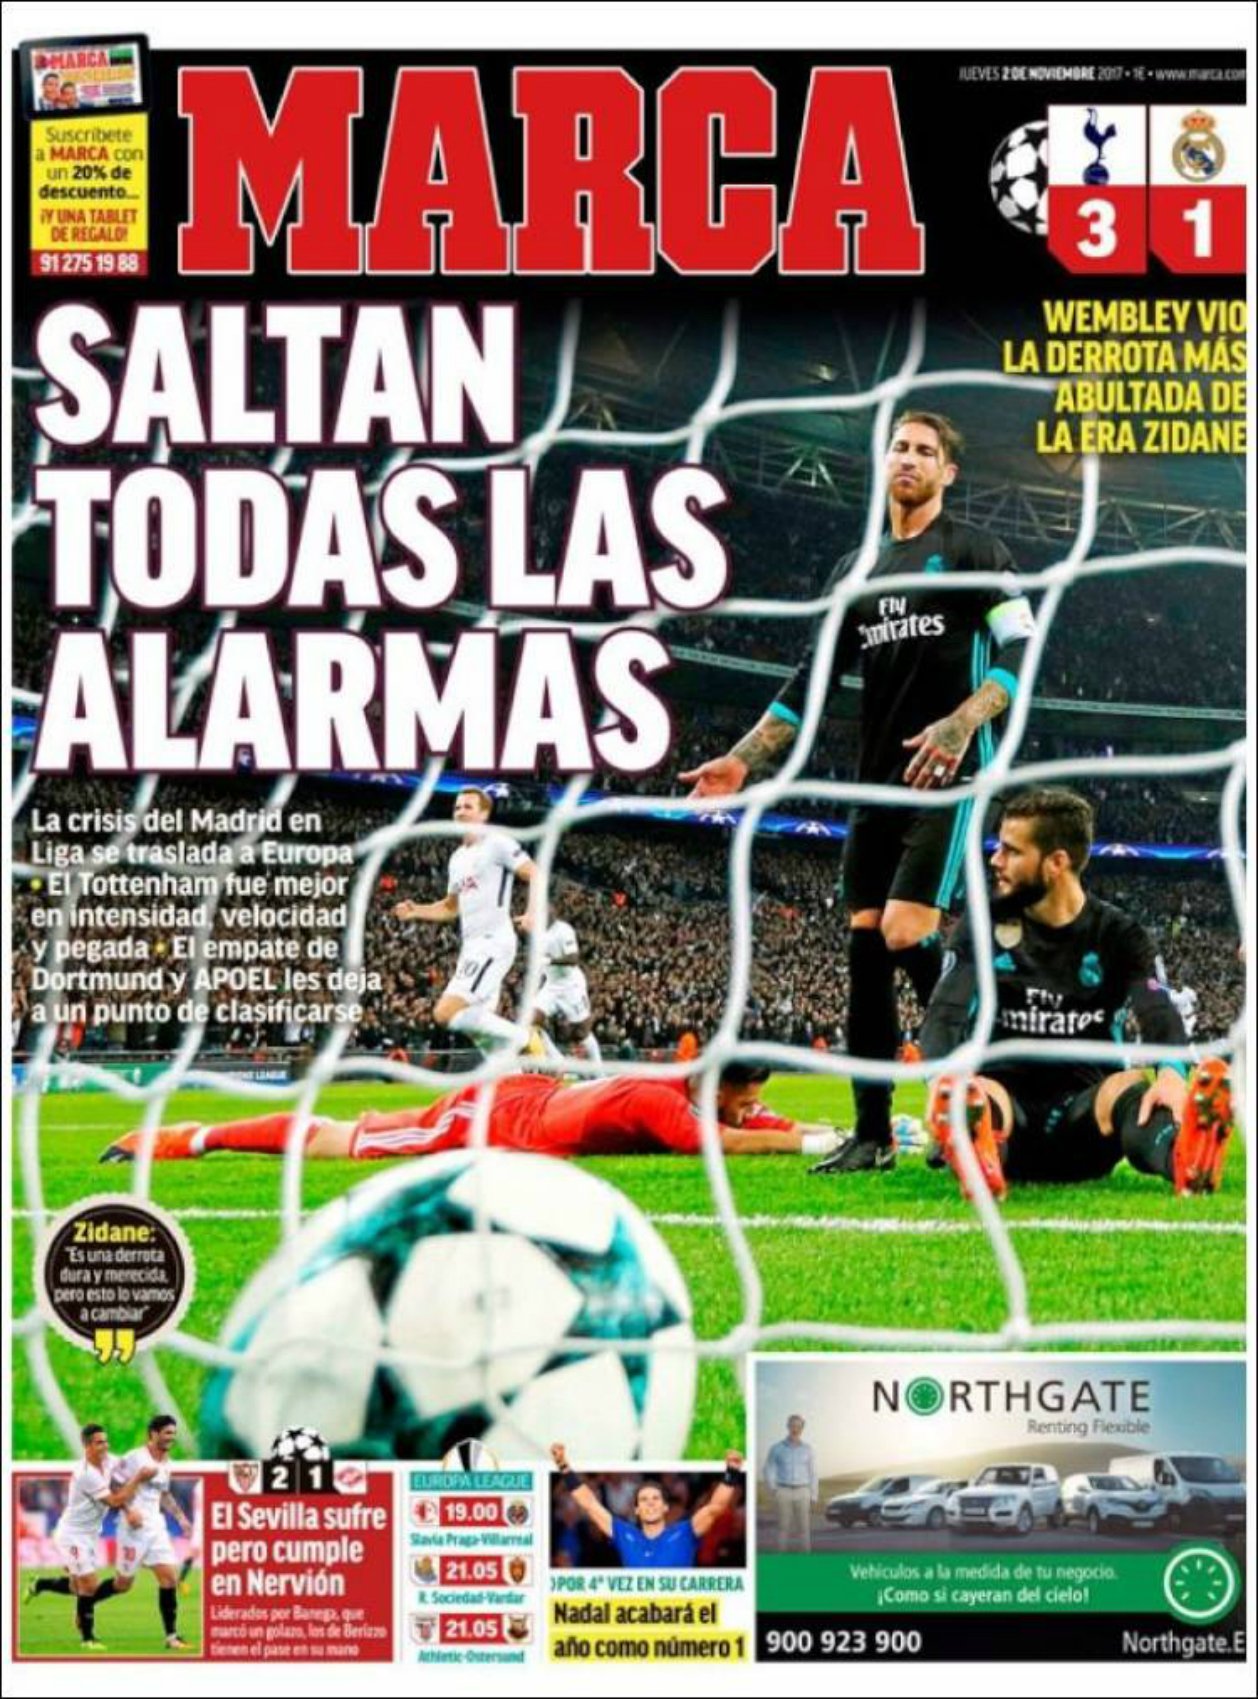 La premsa s'acarnissa amb el Madrid: "Malson a Wembley"